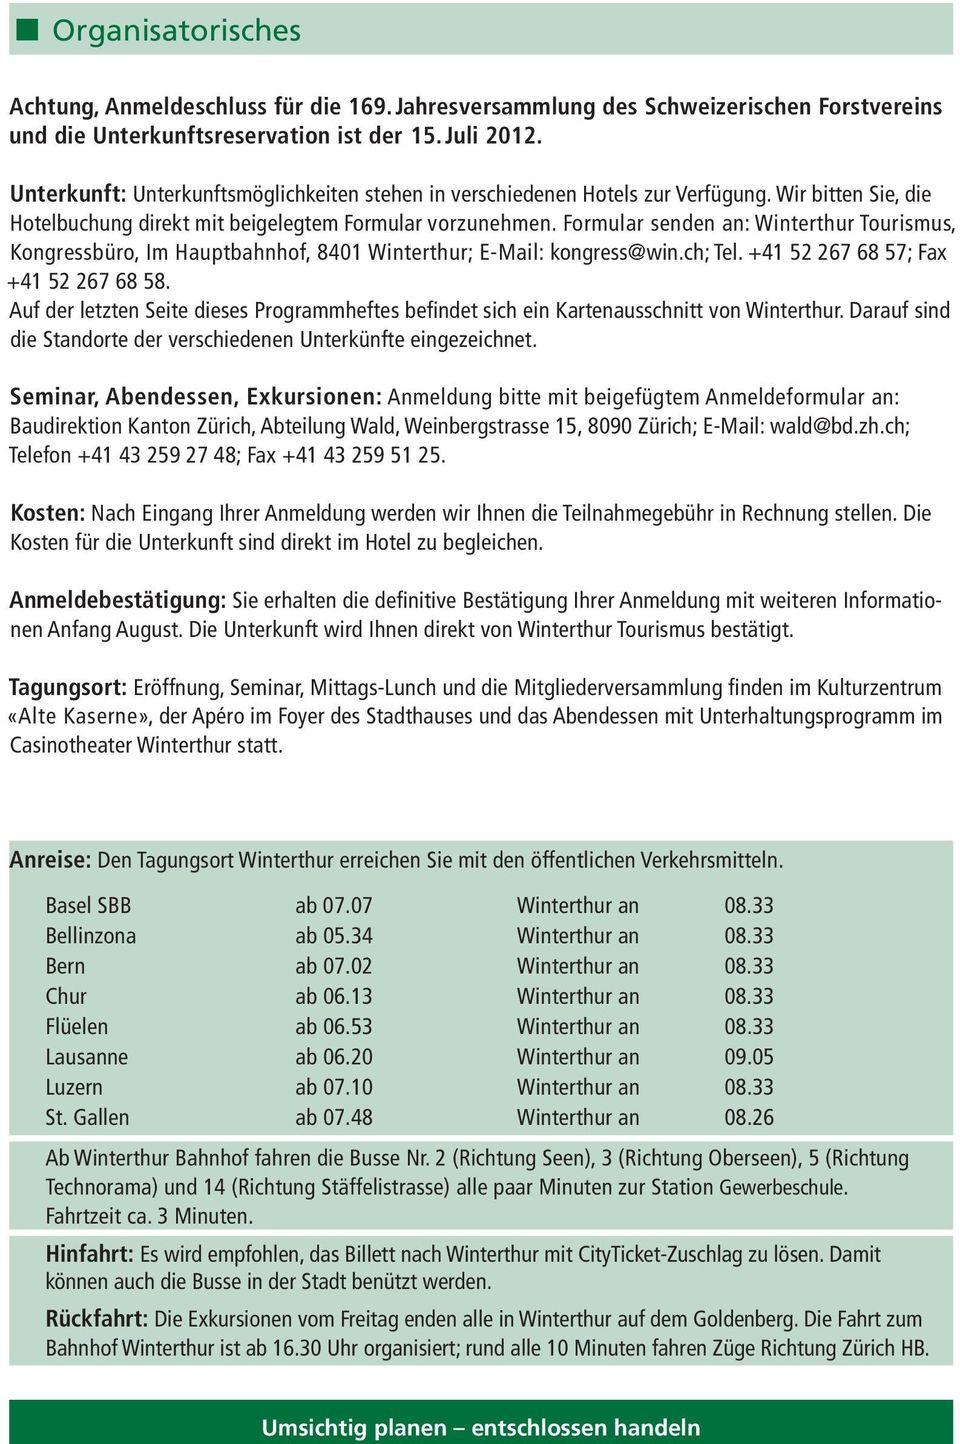 Formular senden an: Winterthur Tourismus, Kongressbüro, Im Hauptbahnhof, 8401 Winterthur; E-Mail: kongress@win.ch; Tel. +41 52 267 68 57; Fax +41 52 267 68 58.